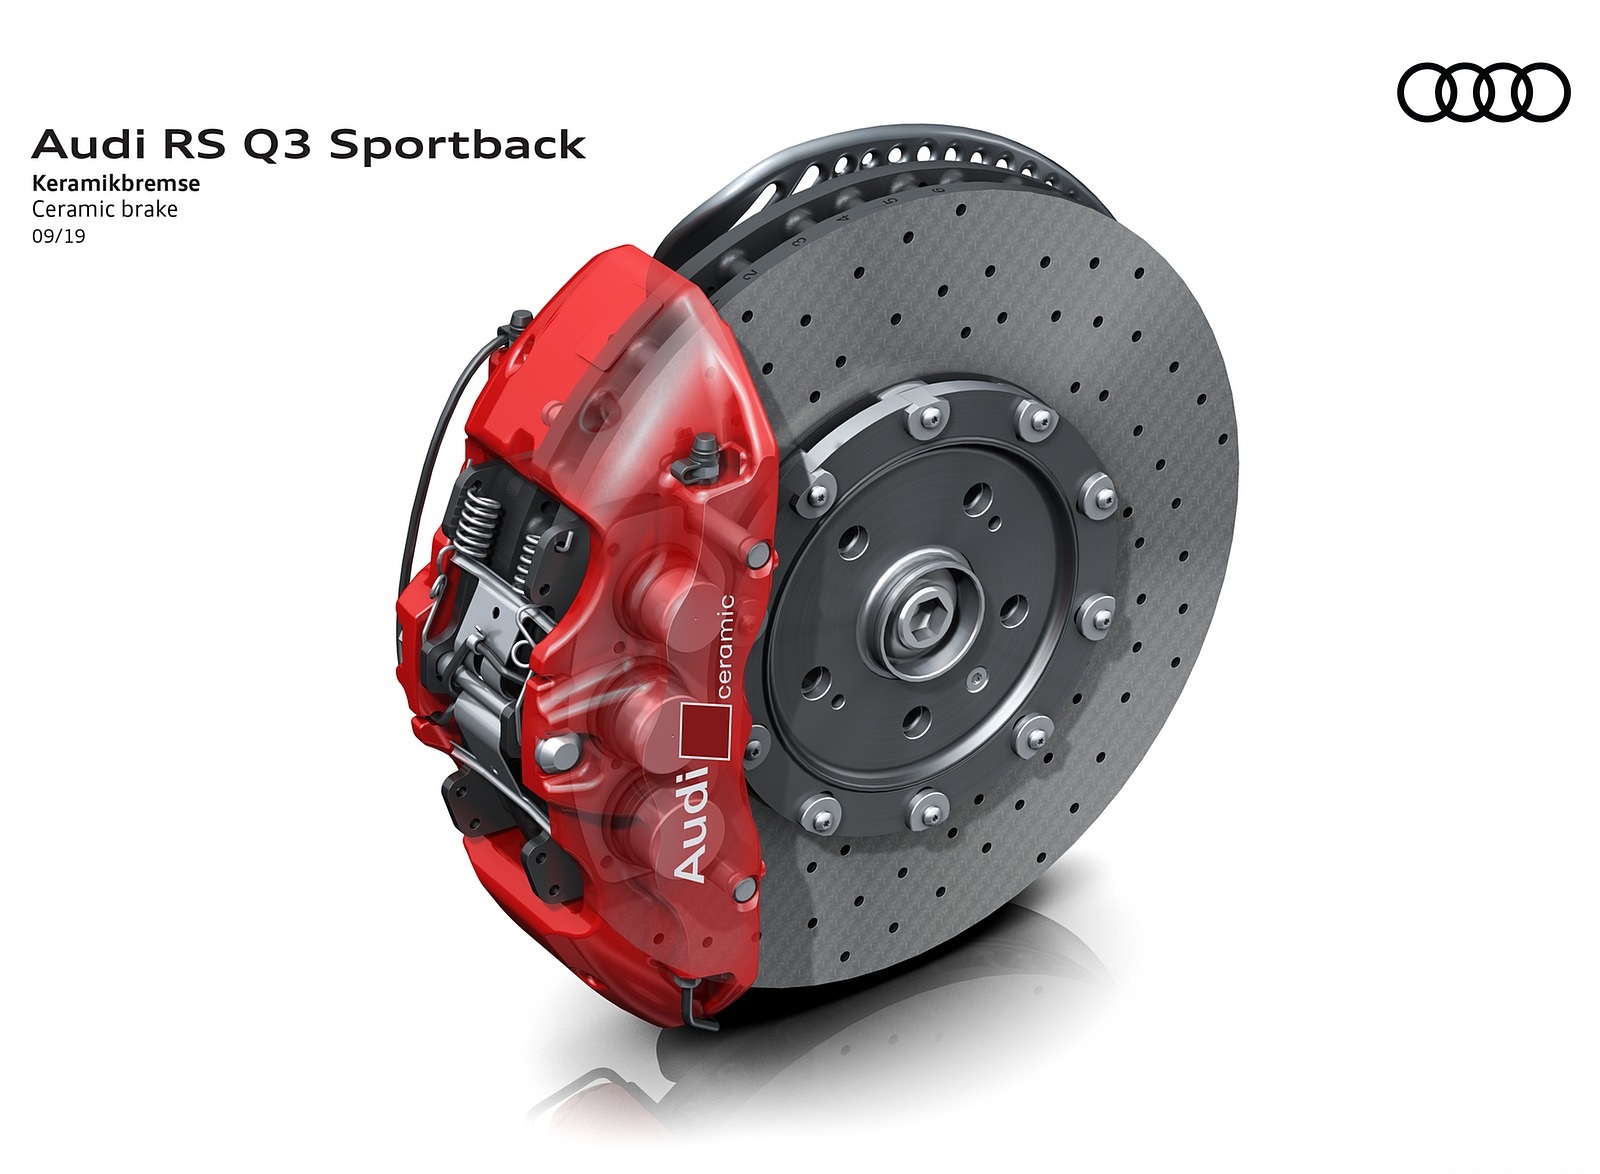 2020 Audi RS Q3 Sportback Ceramic brake Wallpapers #120 of 127